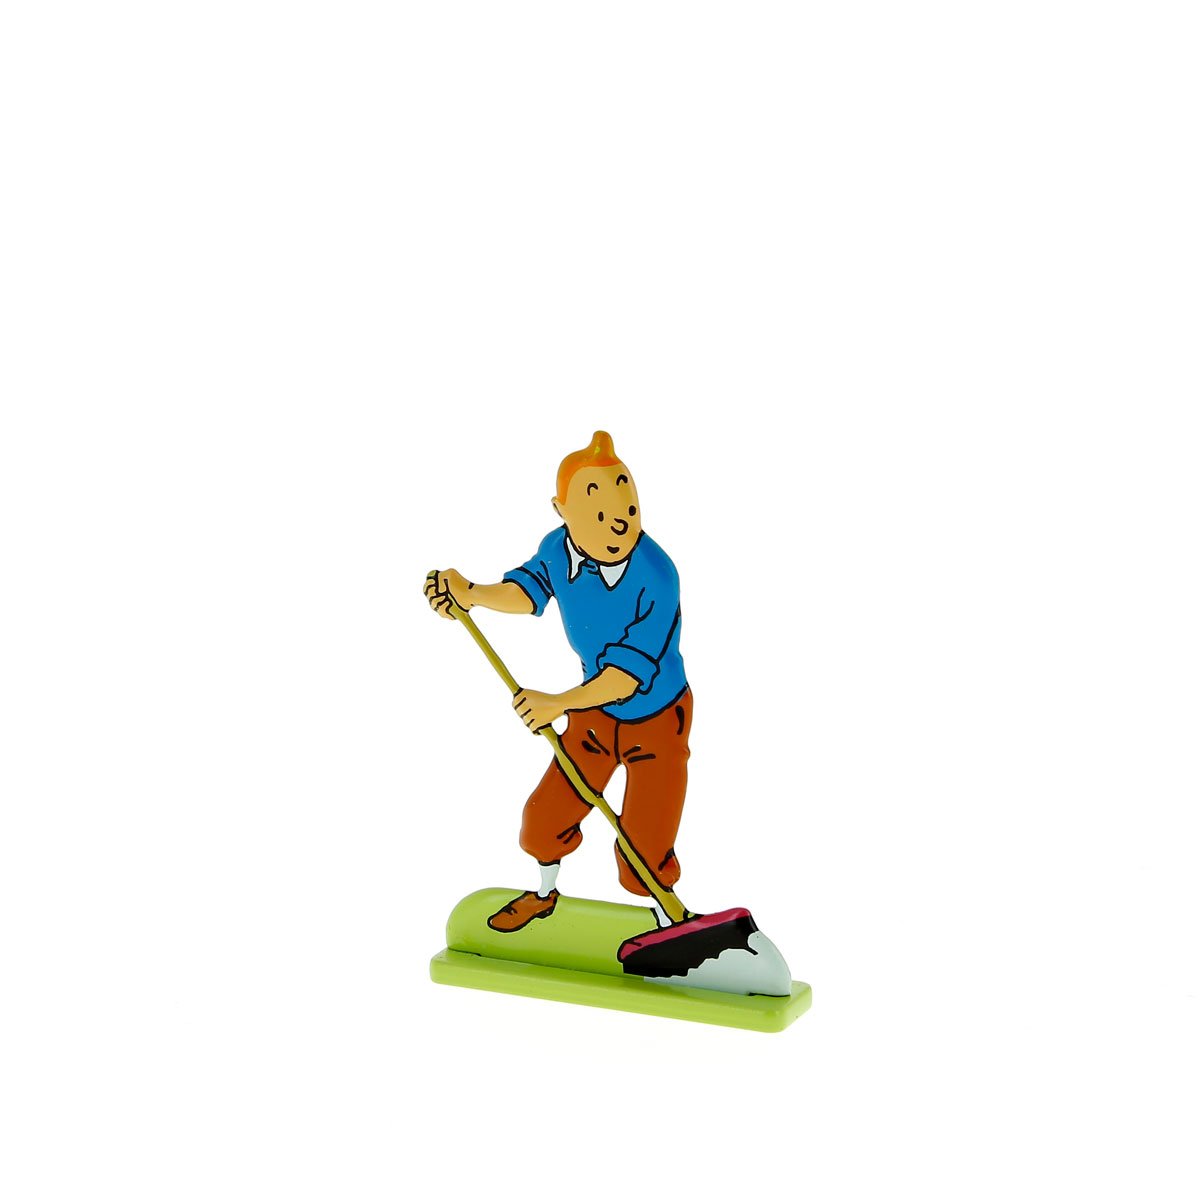 Tintin sweeping up